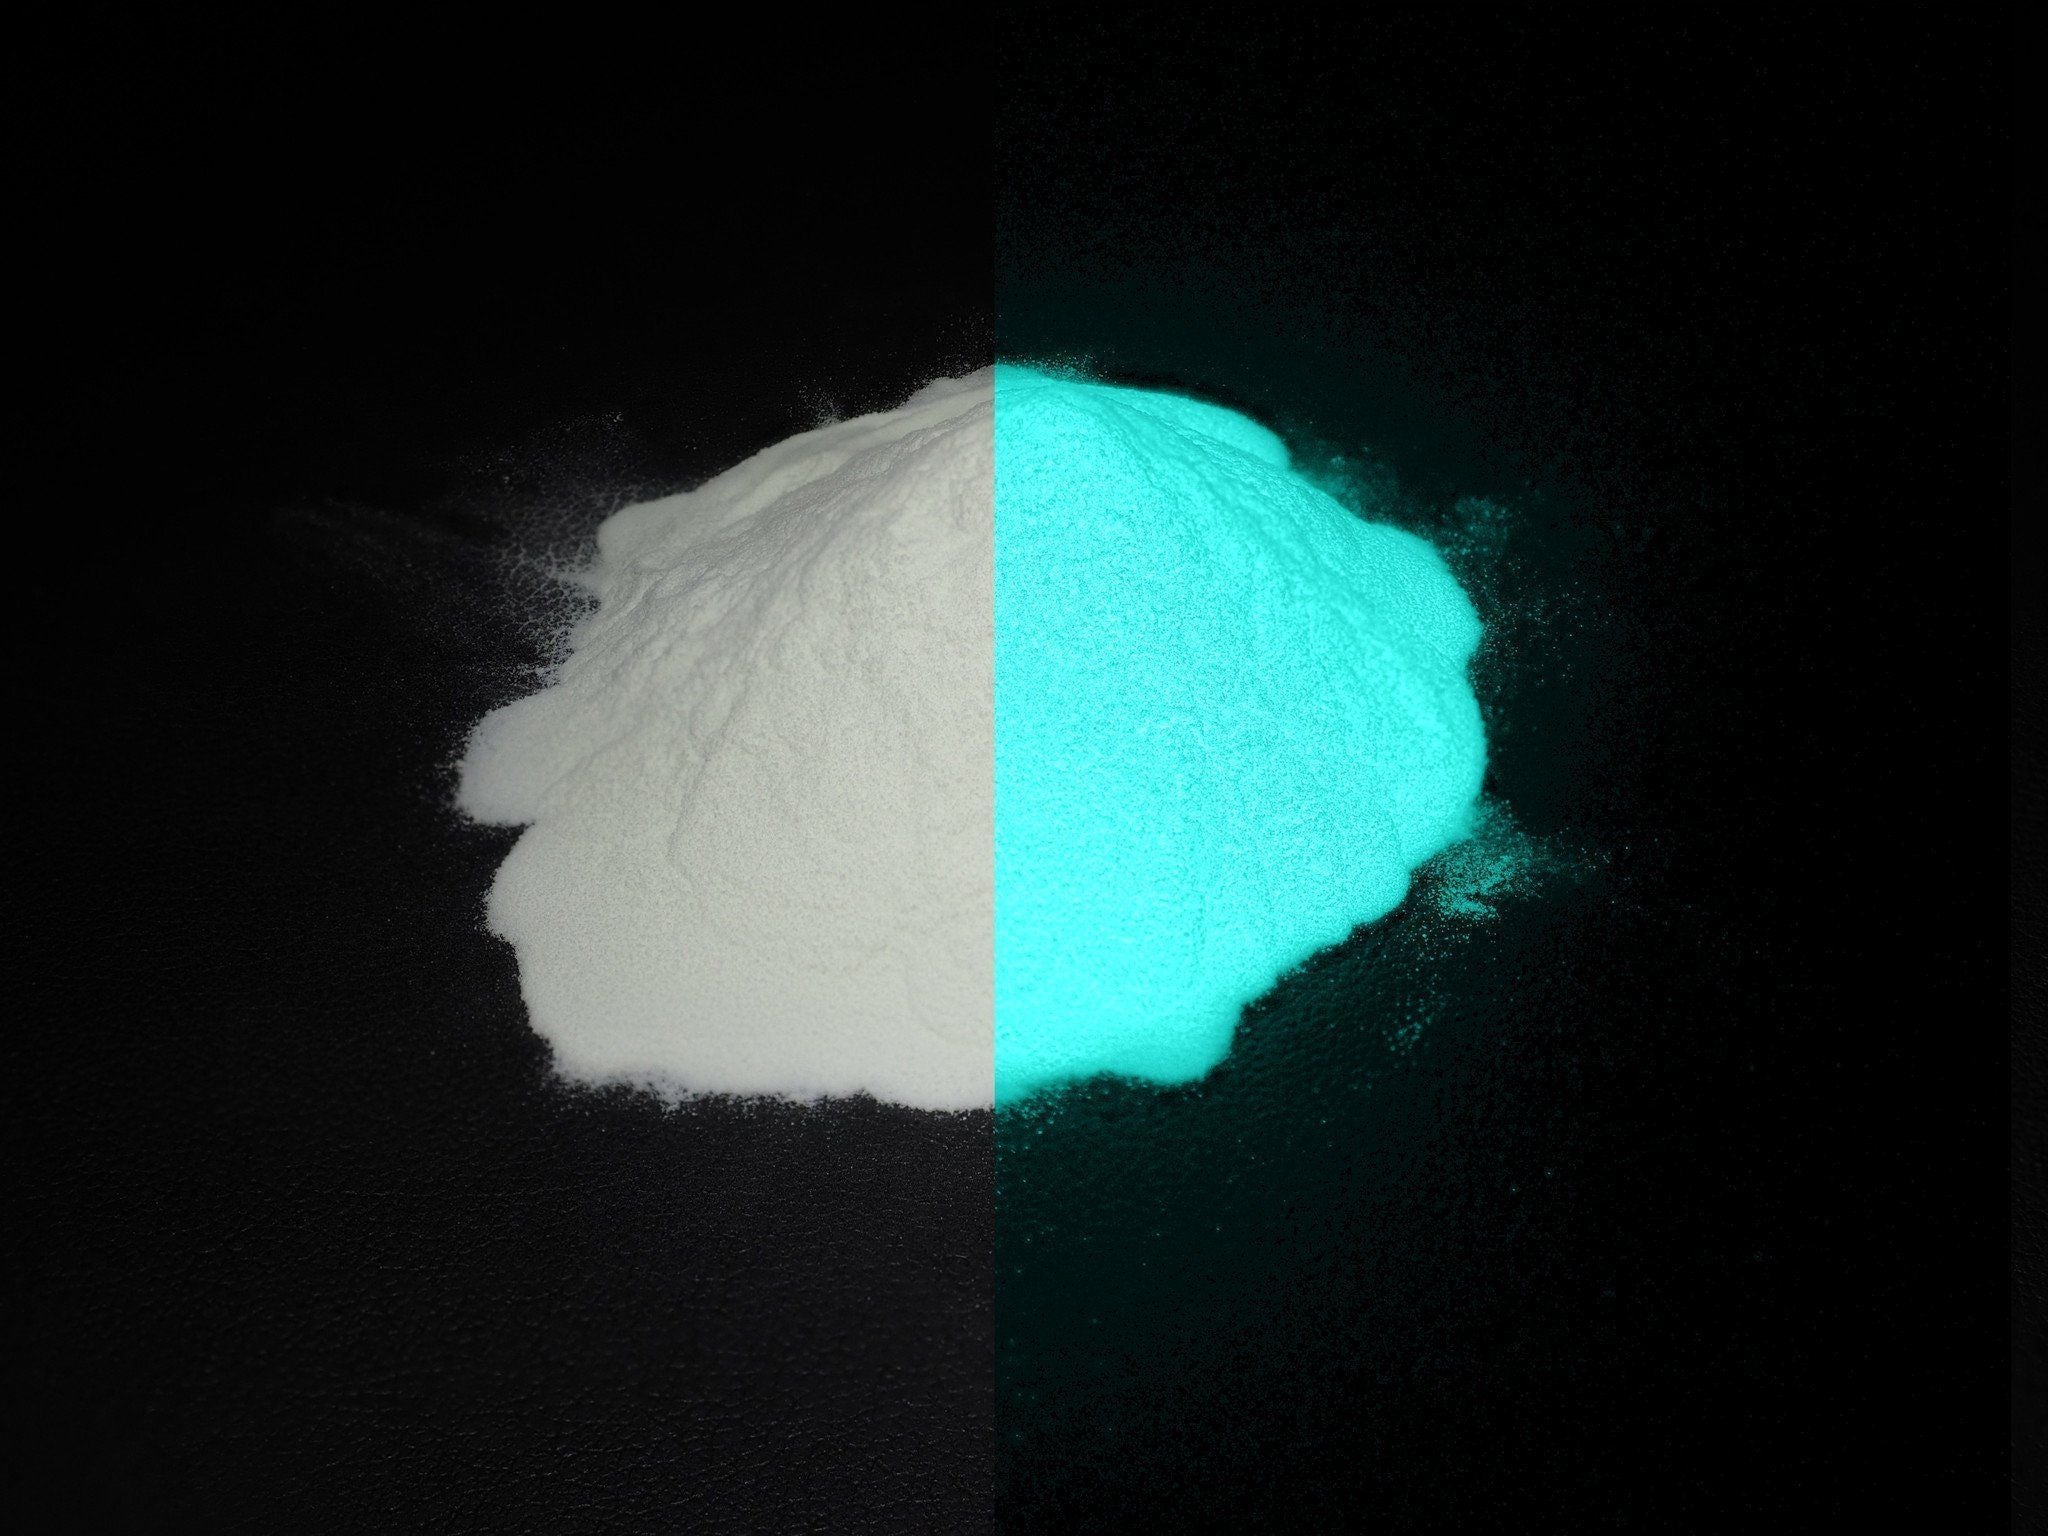 Phosphorescent Glow in the Dark Powder Pigment - Aqua